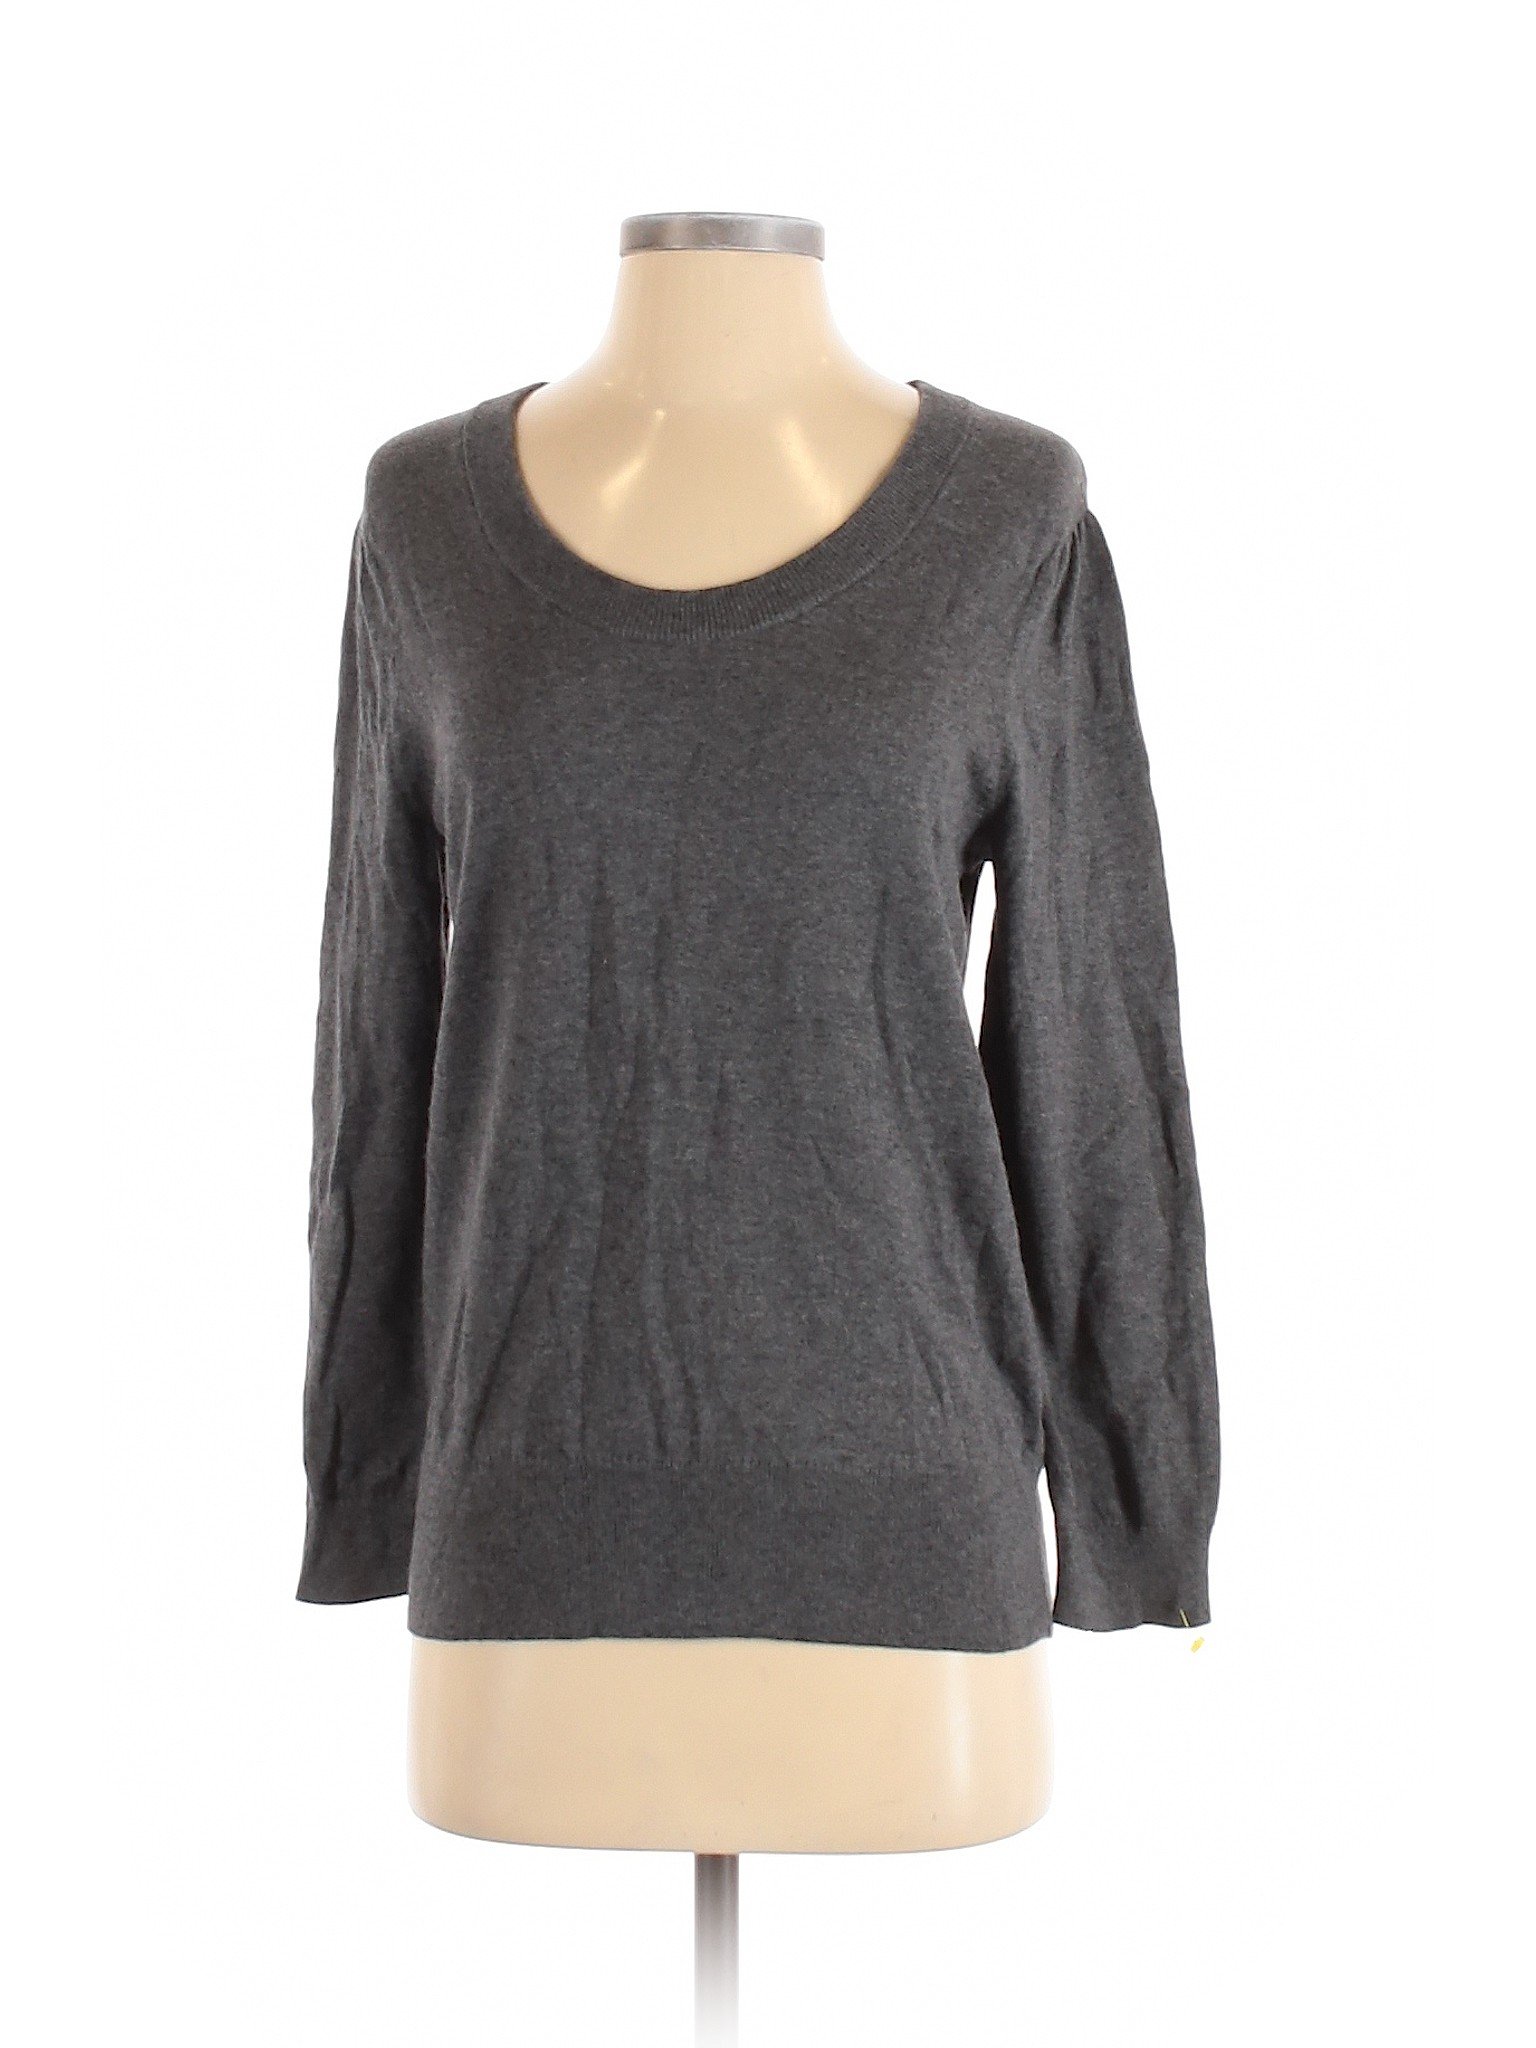 Dockers Women Gray Pullover Sweater S | eBay